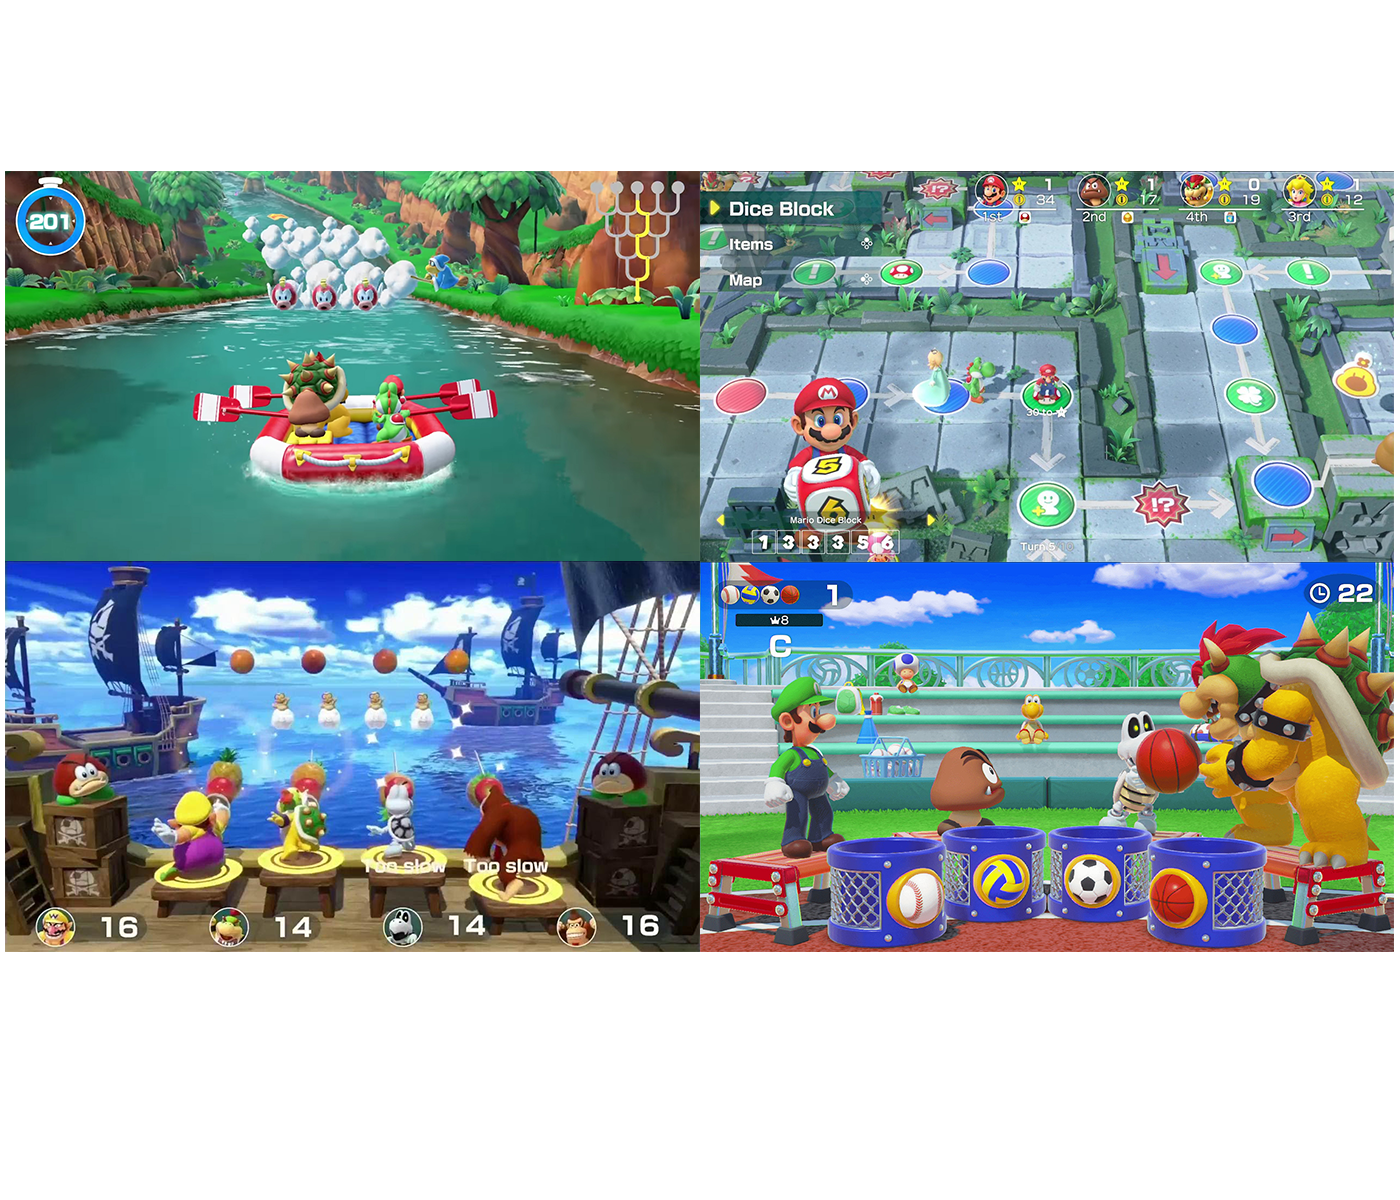 Nintendo Switch Mario Party Bundle: Super Mario Party, Mario Kart 8 Deluxe  and Nintendo Switch 32GB Console with Neon Red and Blue Joy-Con